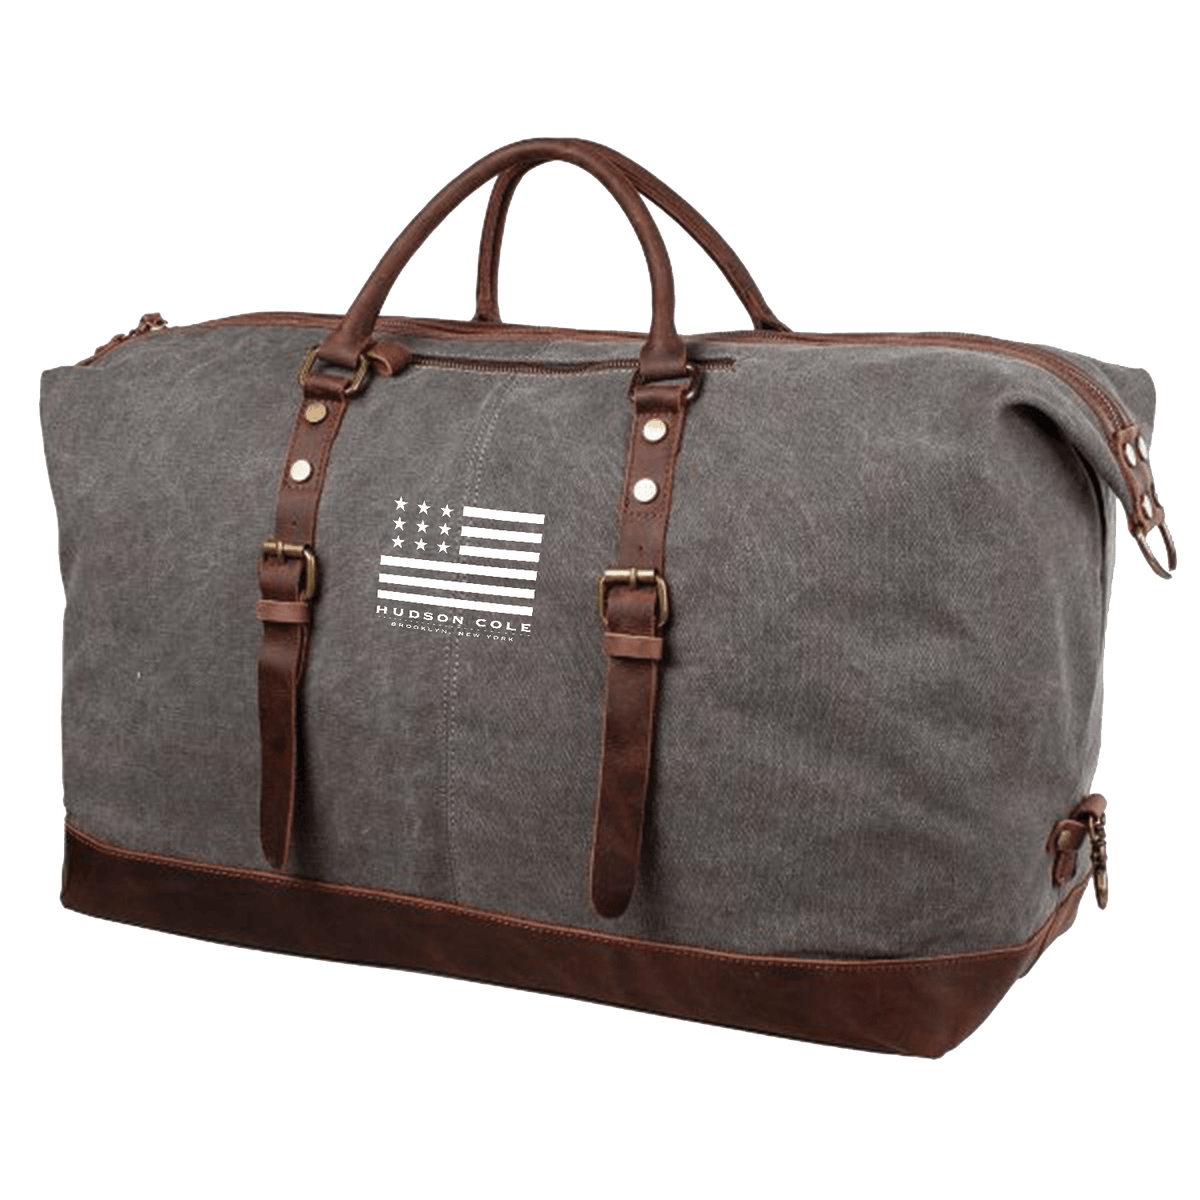 Travel Bags - Designer Travel Bags for Women